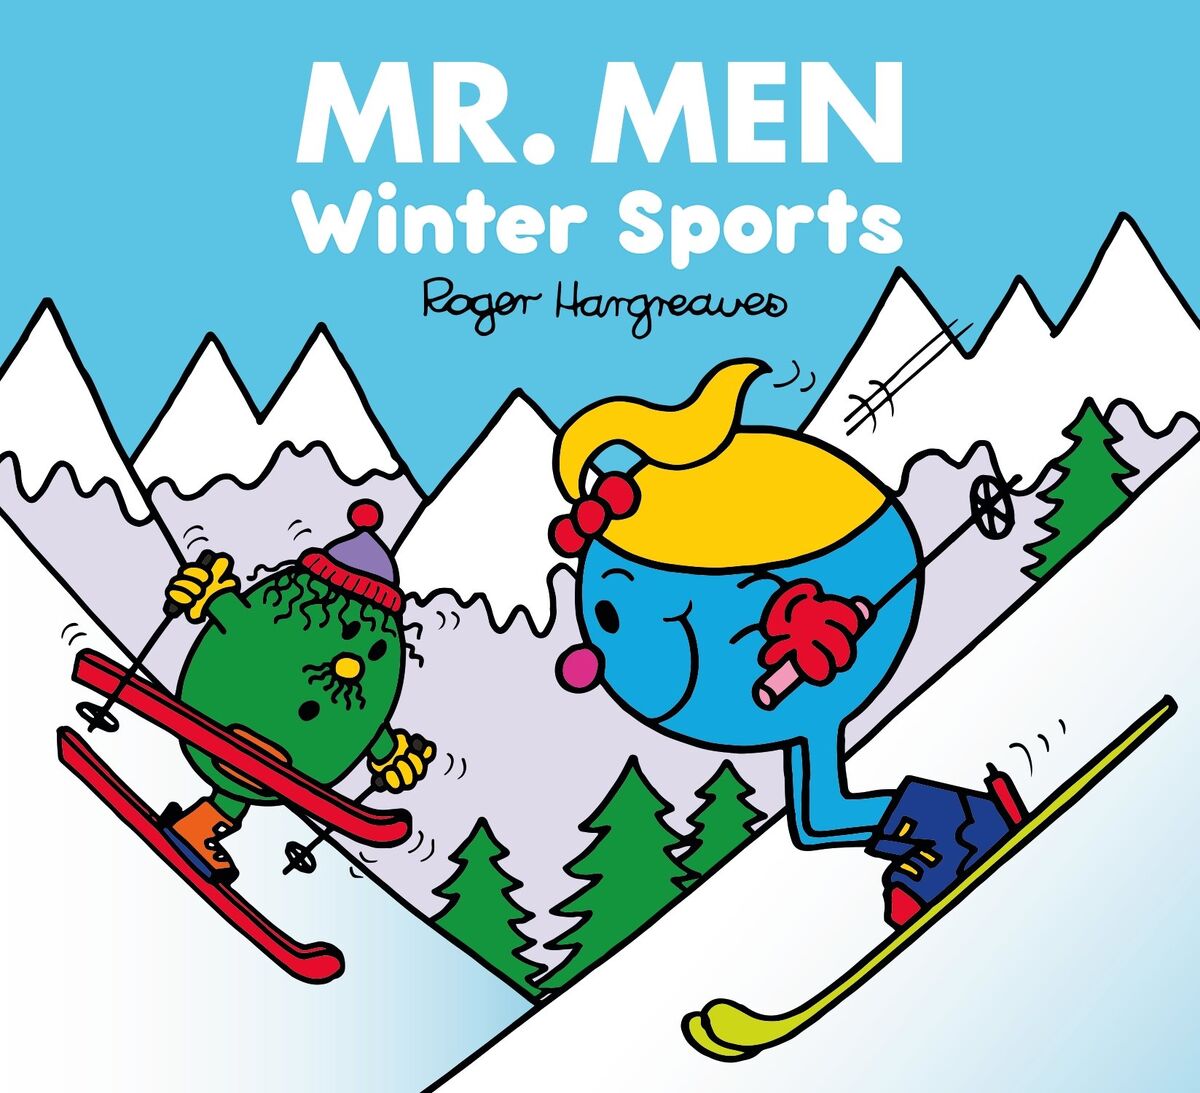 Mr. Men - Winter Sports | Mr. Men Wiki | Fandom